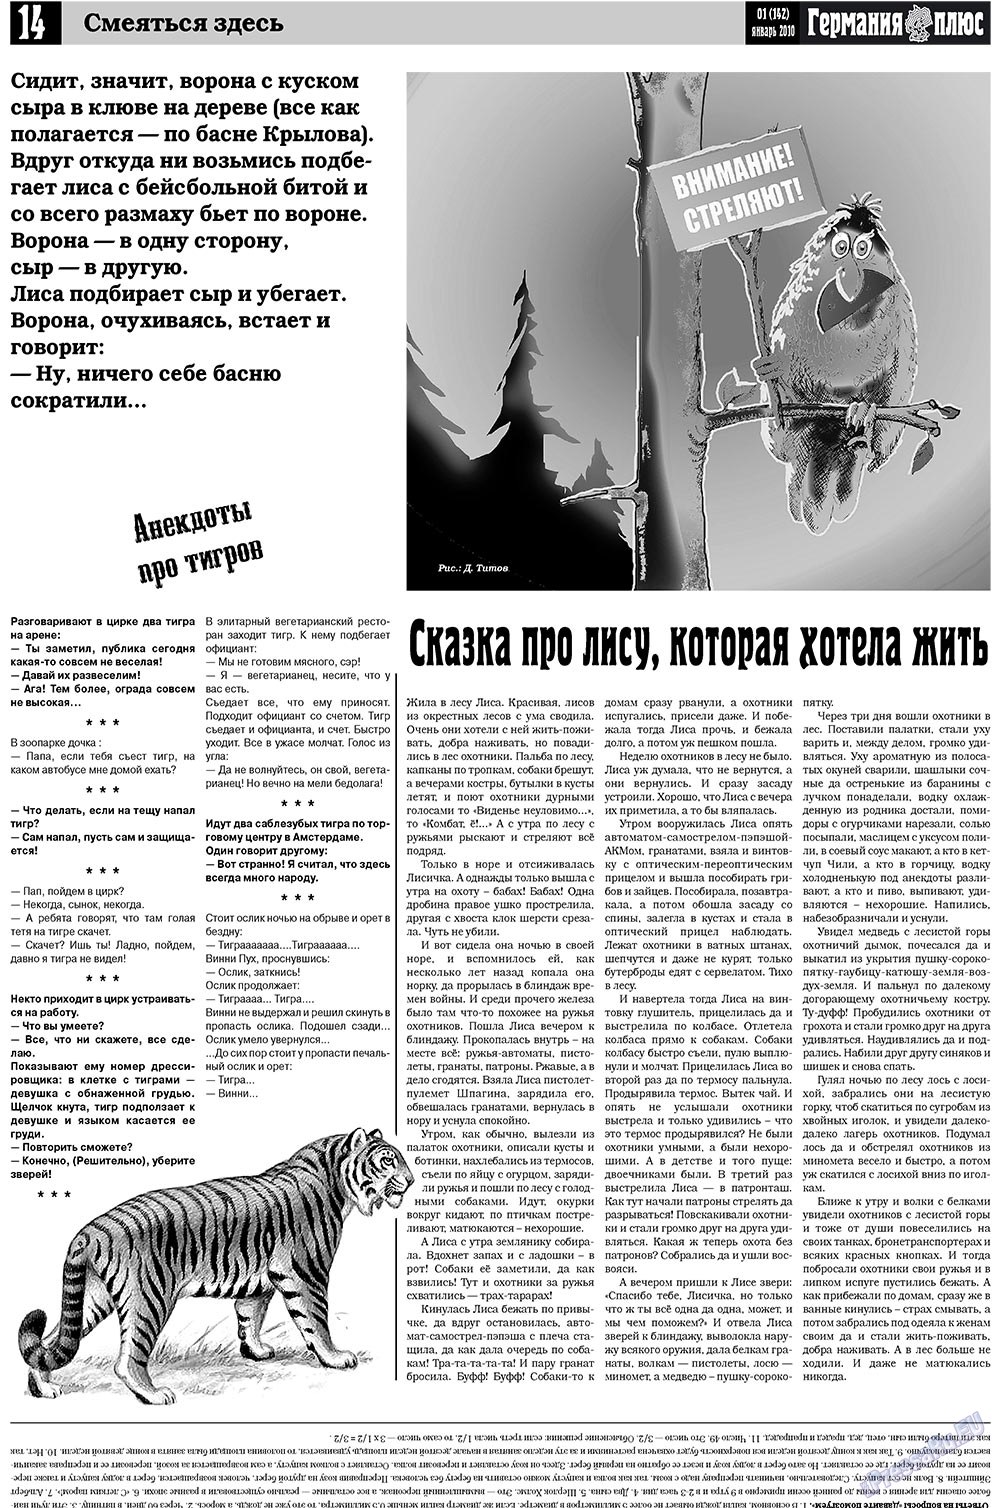 Германия плюс, газета. 2010 №1 стр.14